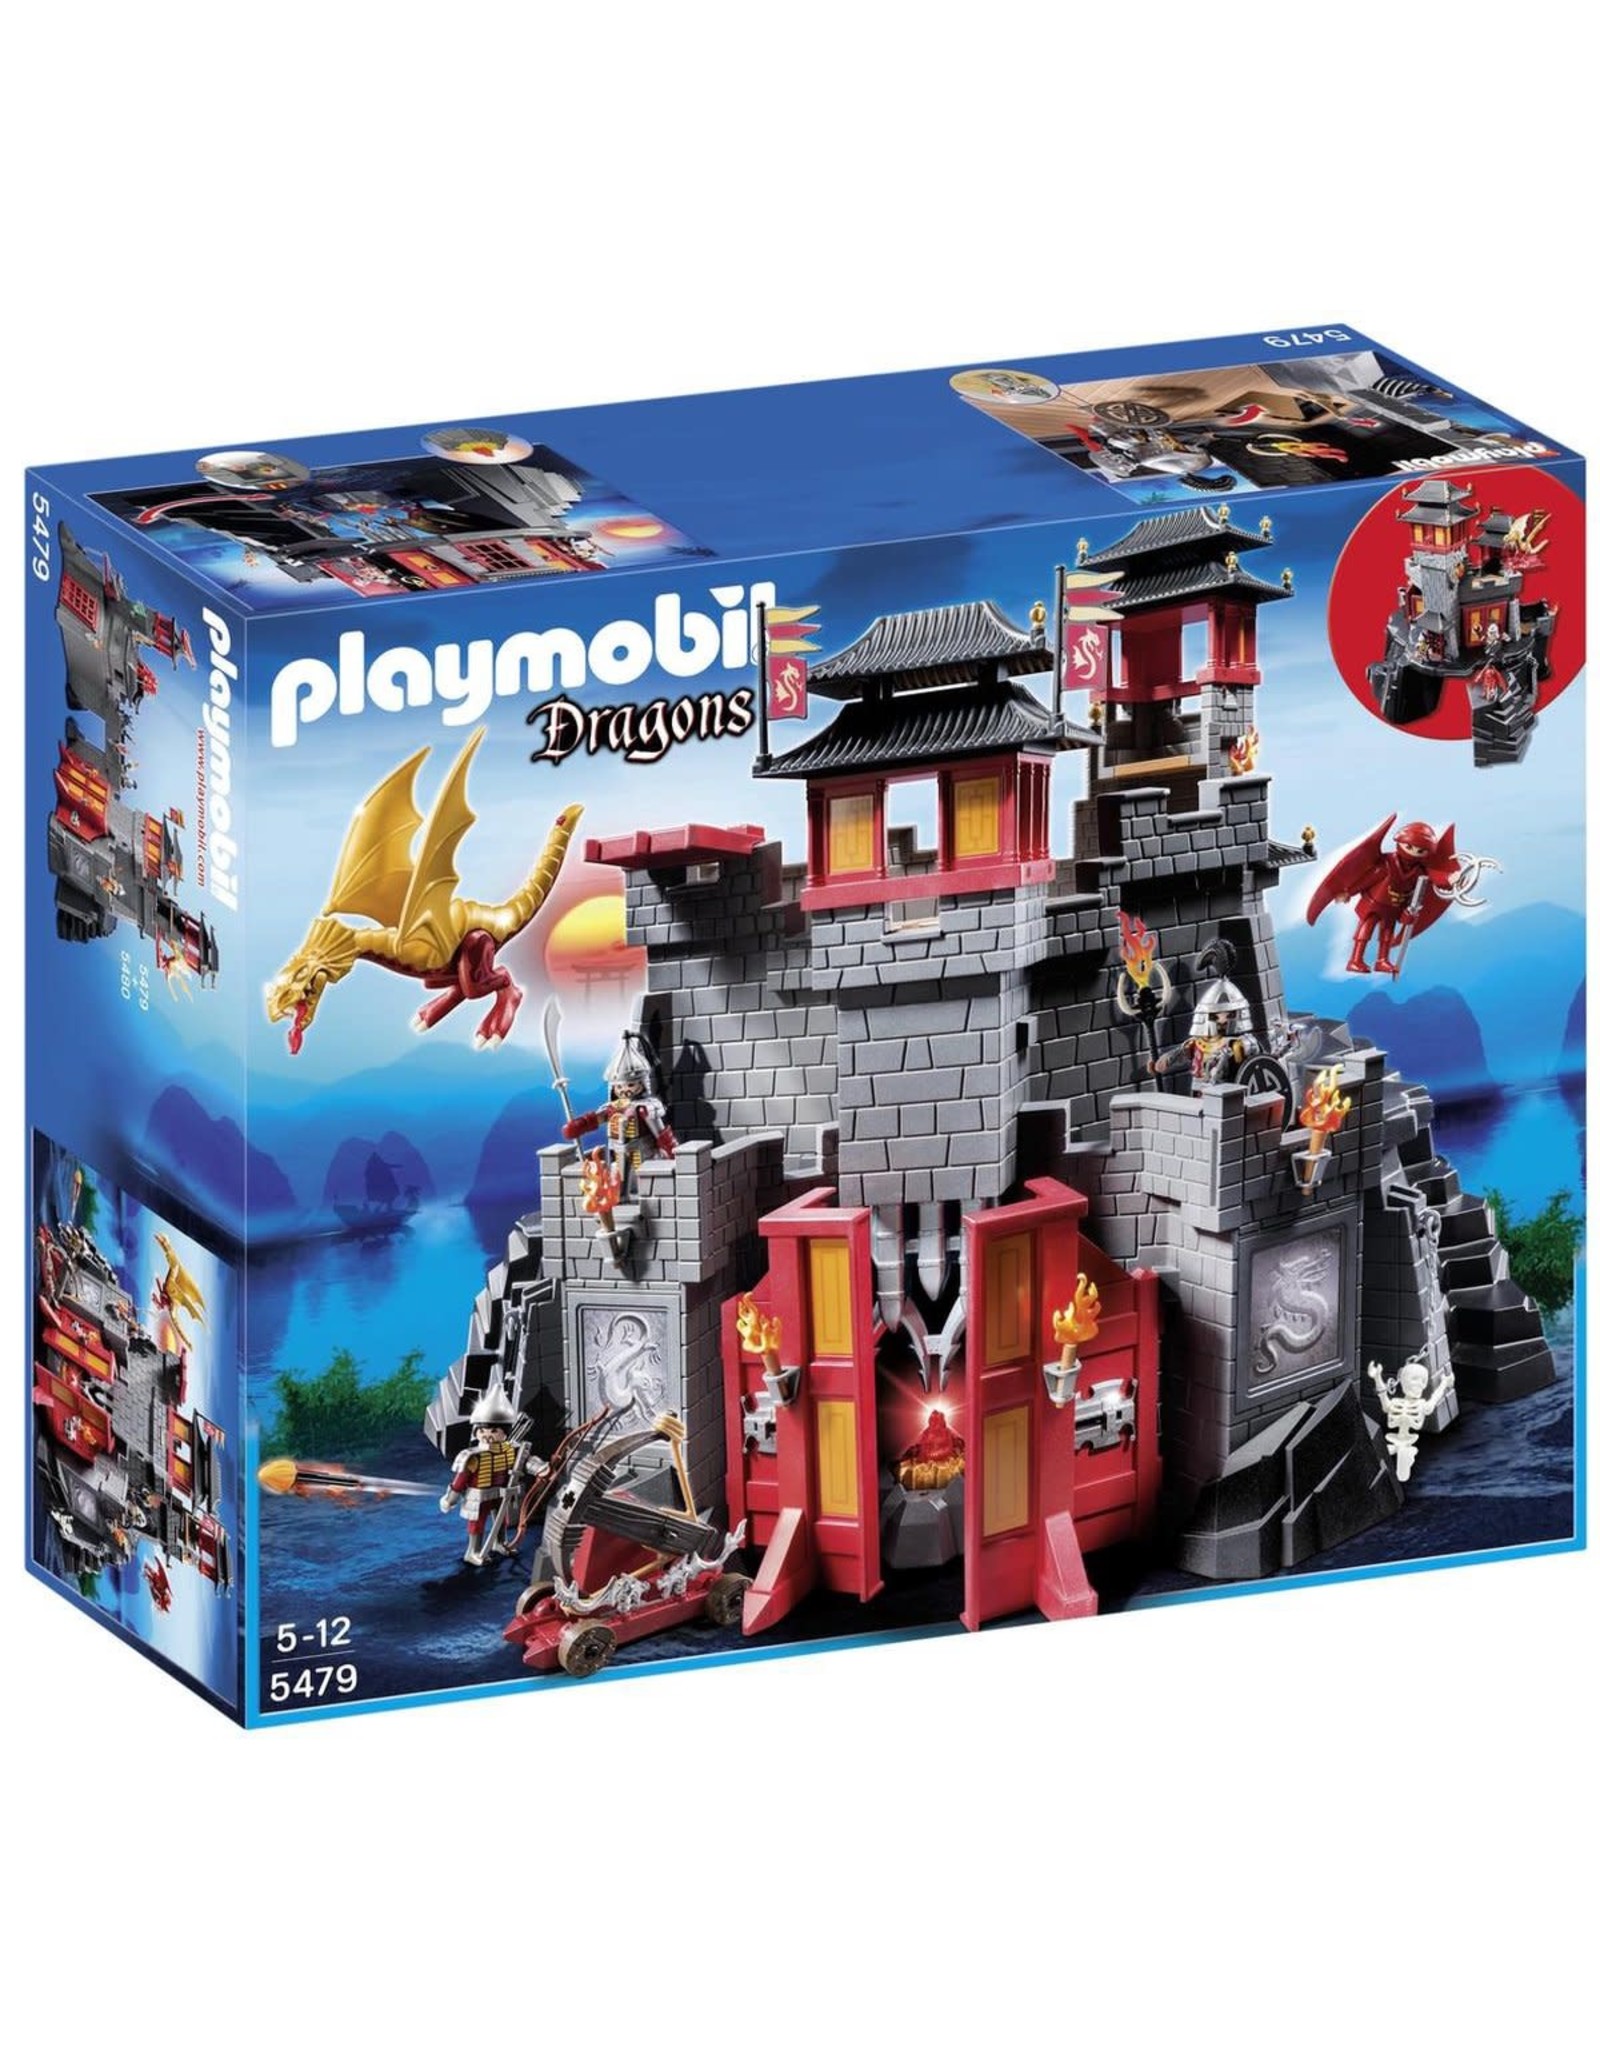 Playmobil Playmobil Dragons 5479 Groot Drakenkasteel